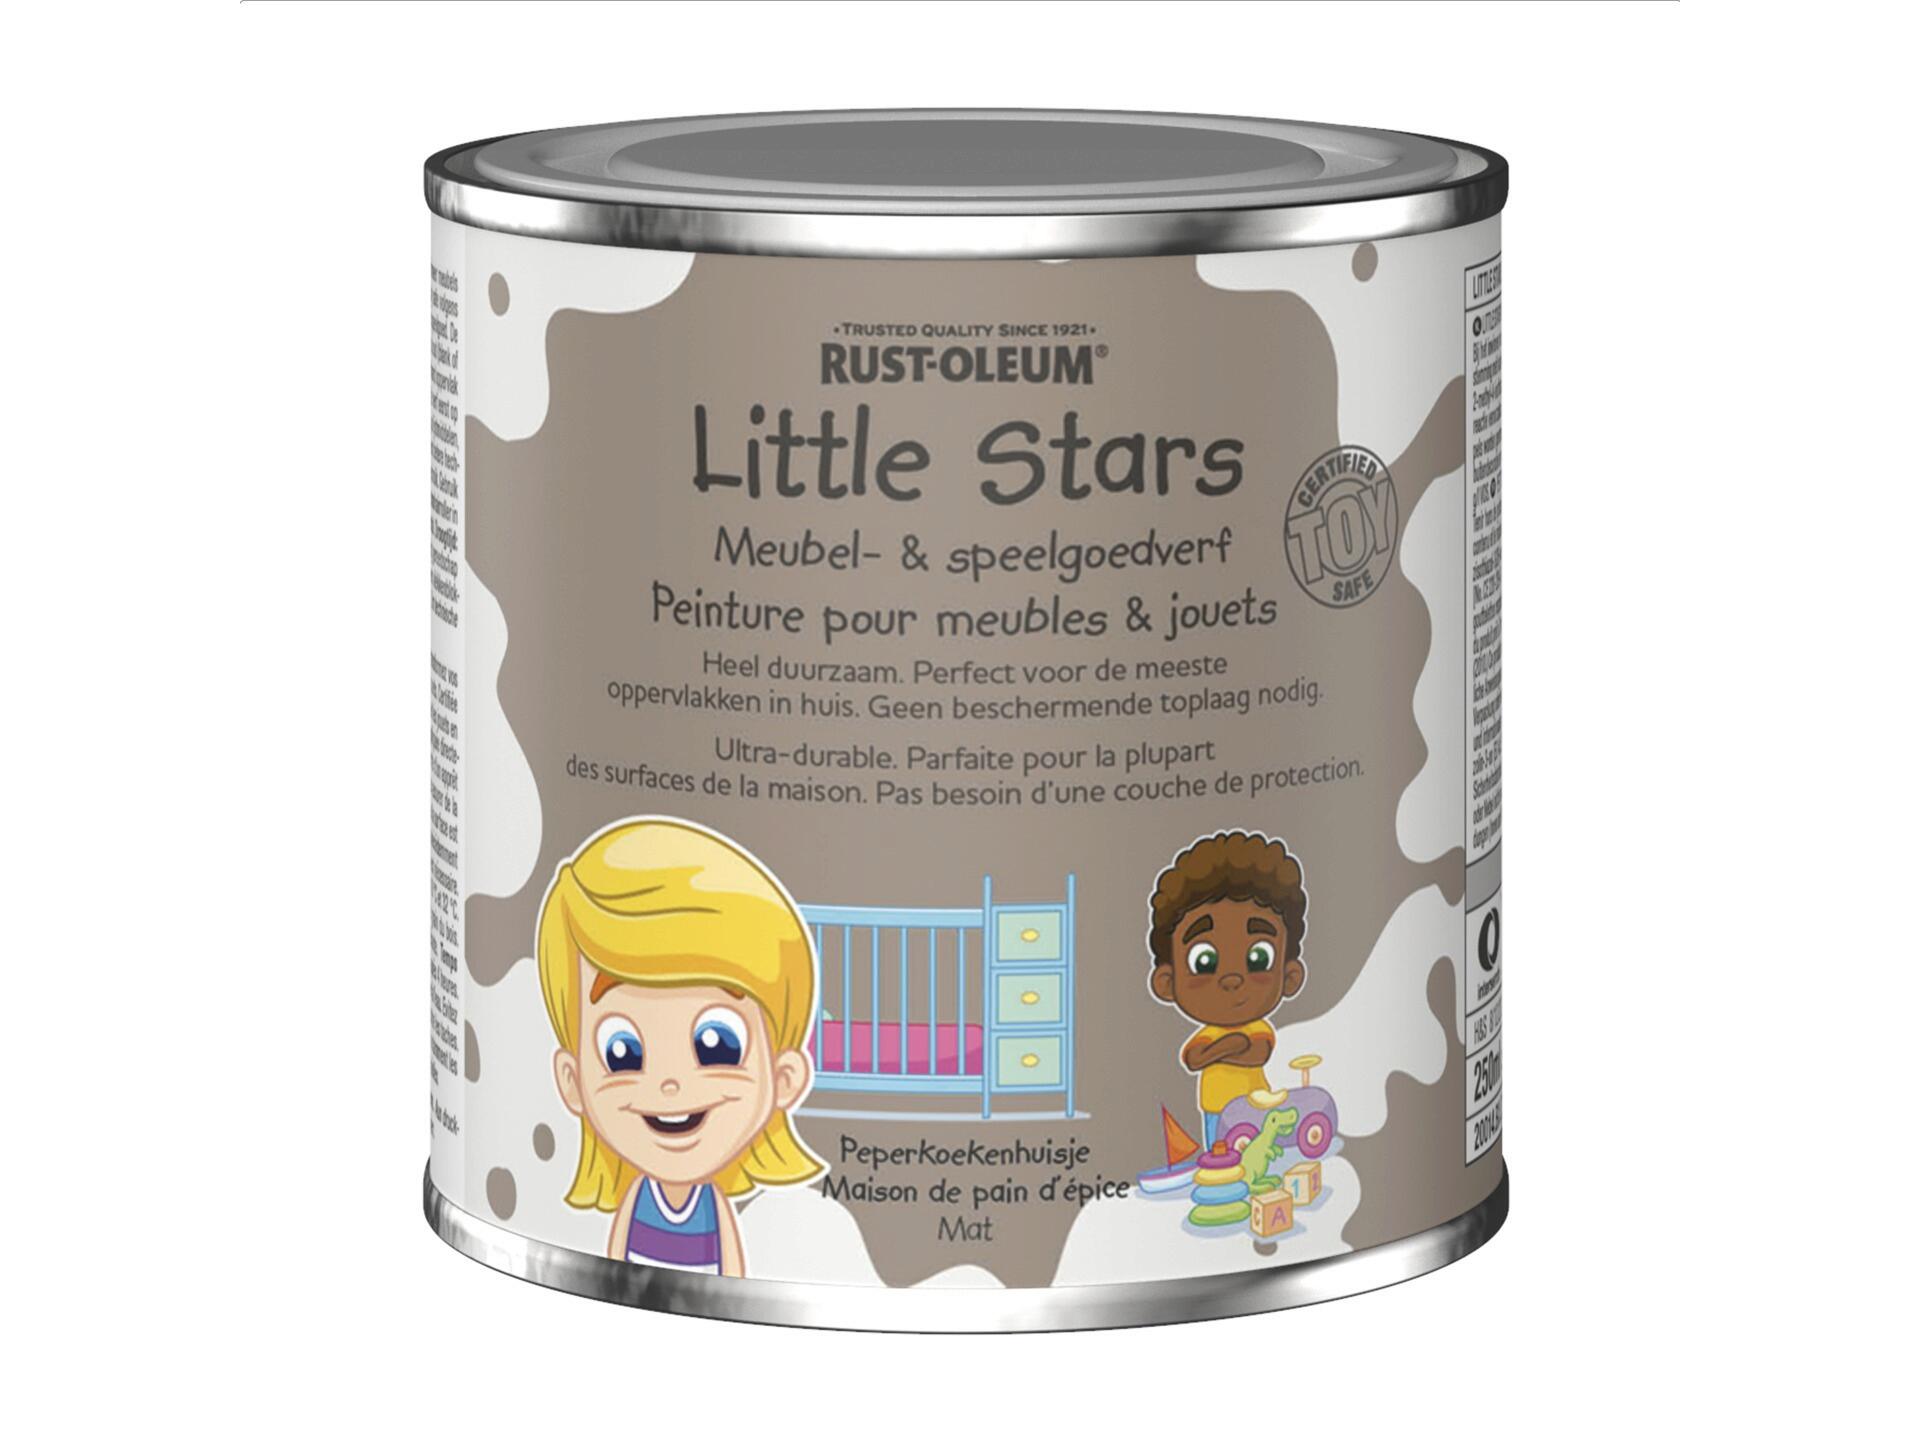 Rust-oleum Little Stars meubel- en speelgoedverf 250ml peperkoekenhuisje